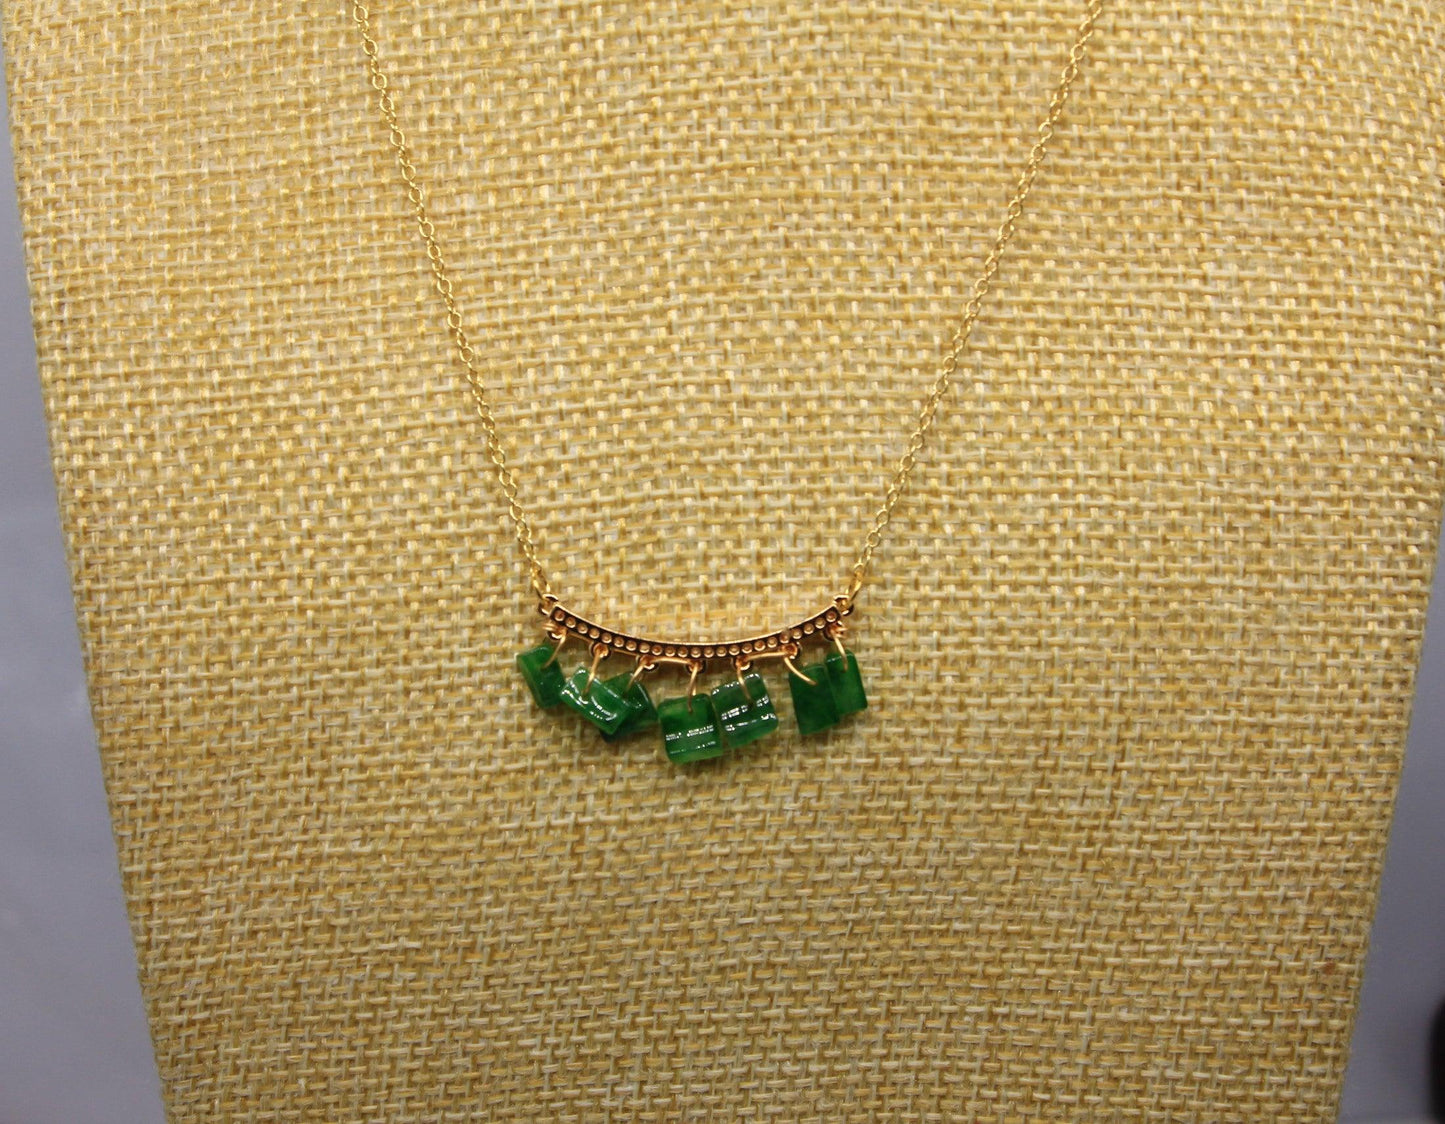 Type A Jadeite Jade Inlay Necklace P4002S - Jade-collector.com